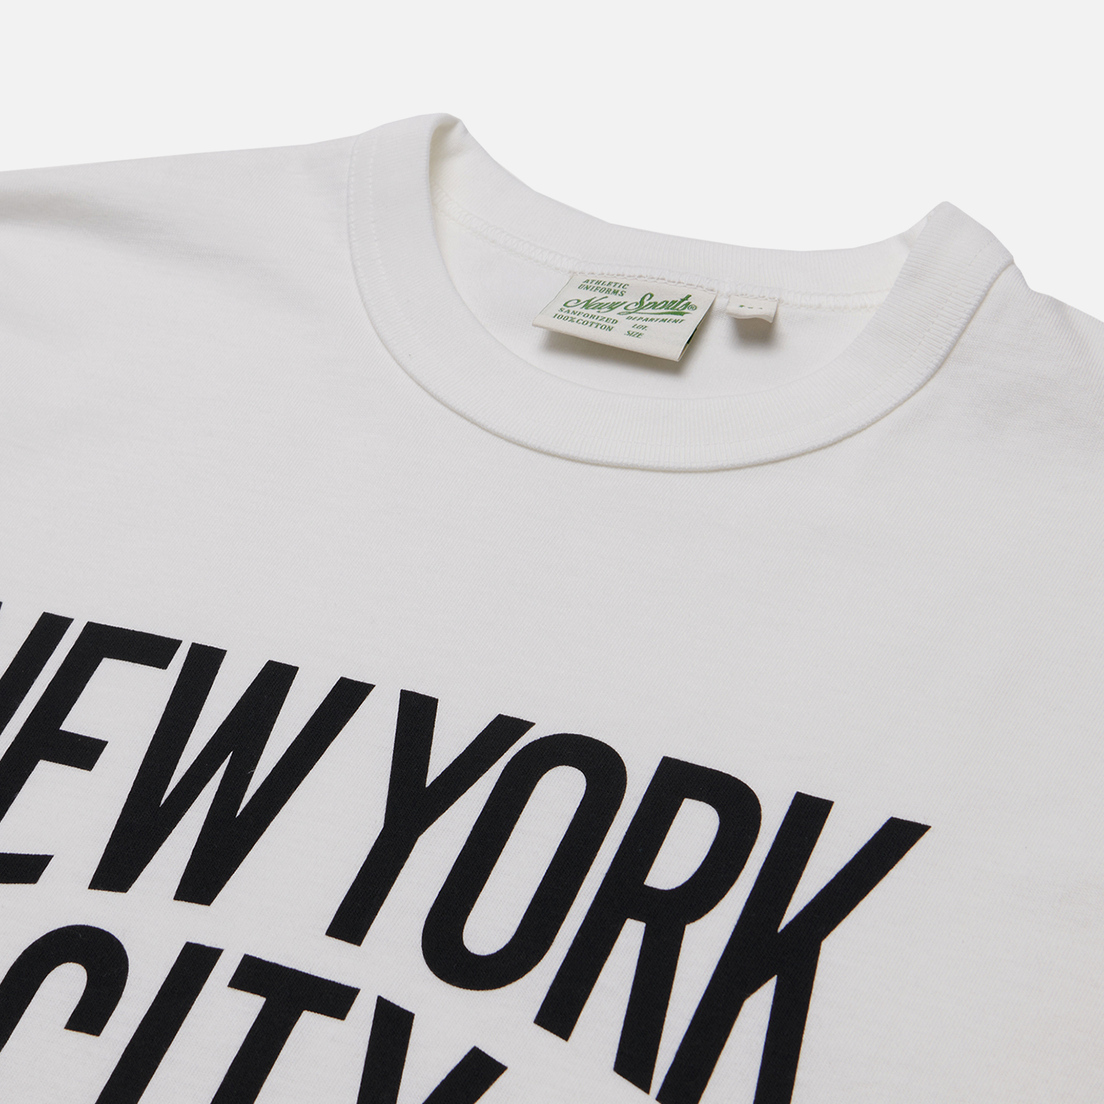 Uniform Bridge Мужская футболка NY City